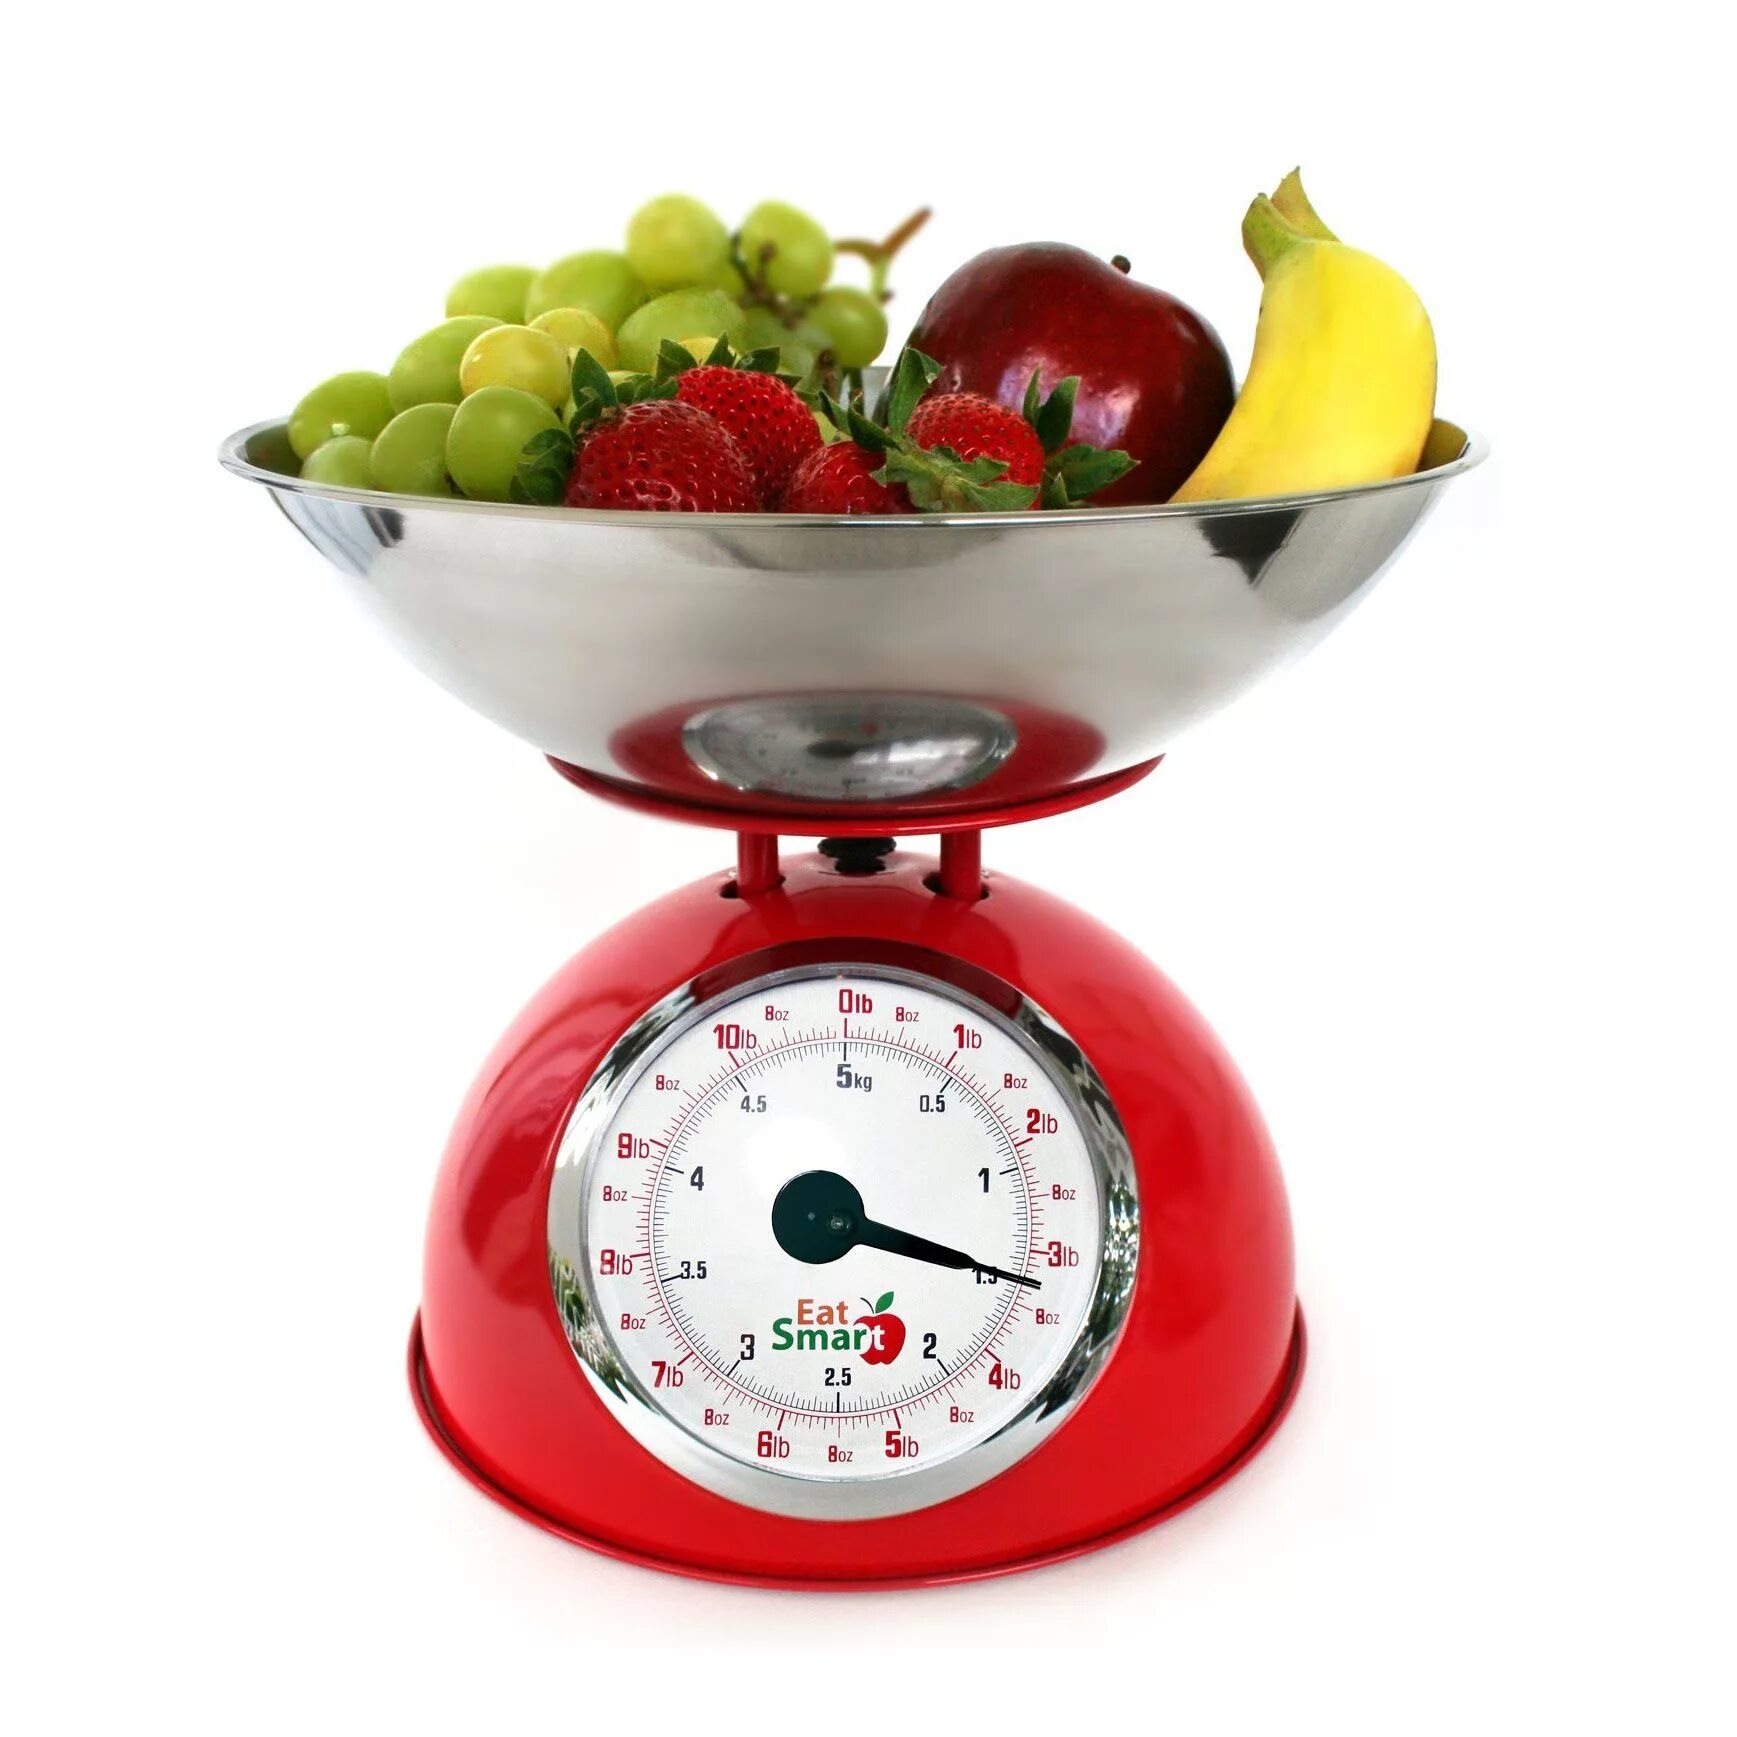 Купить весы для продуктов. Весы Kitchen Scale. Кухонные весы Electronic Kitchen Scale. Весы для взвешивания фруктов и овощей. Весы механические для кухни.